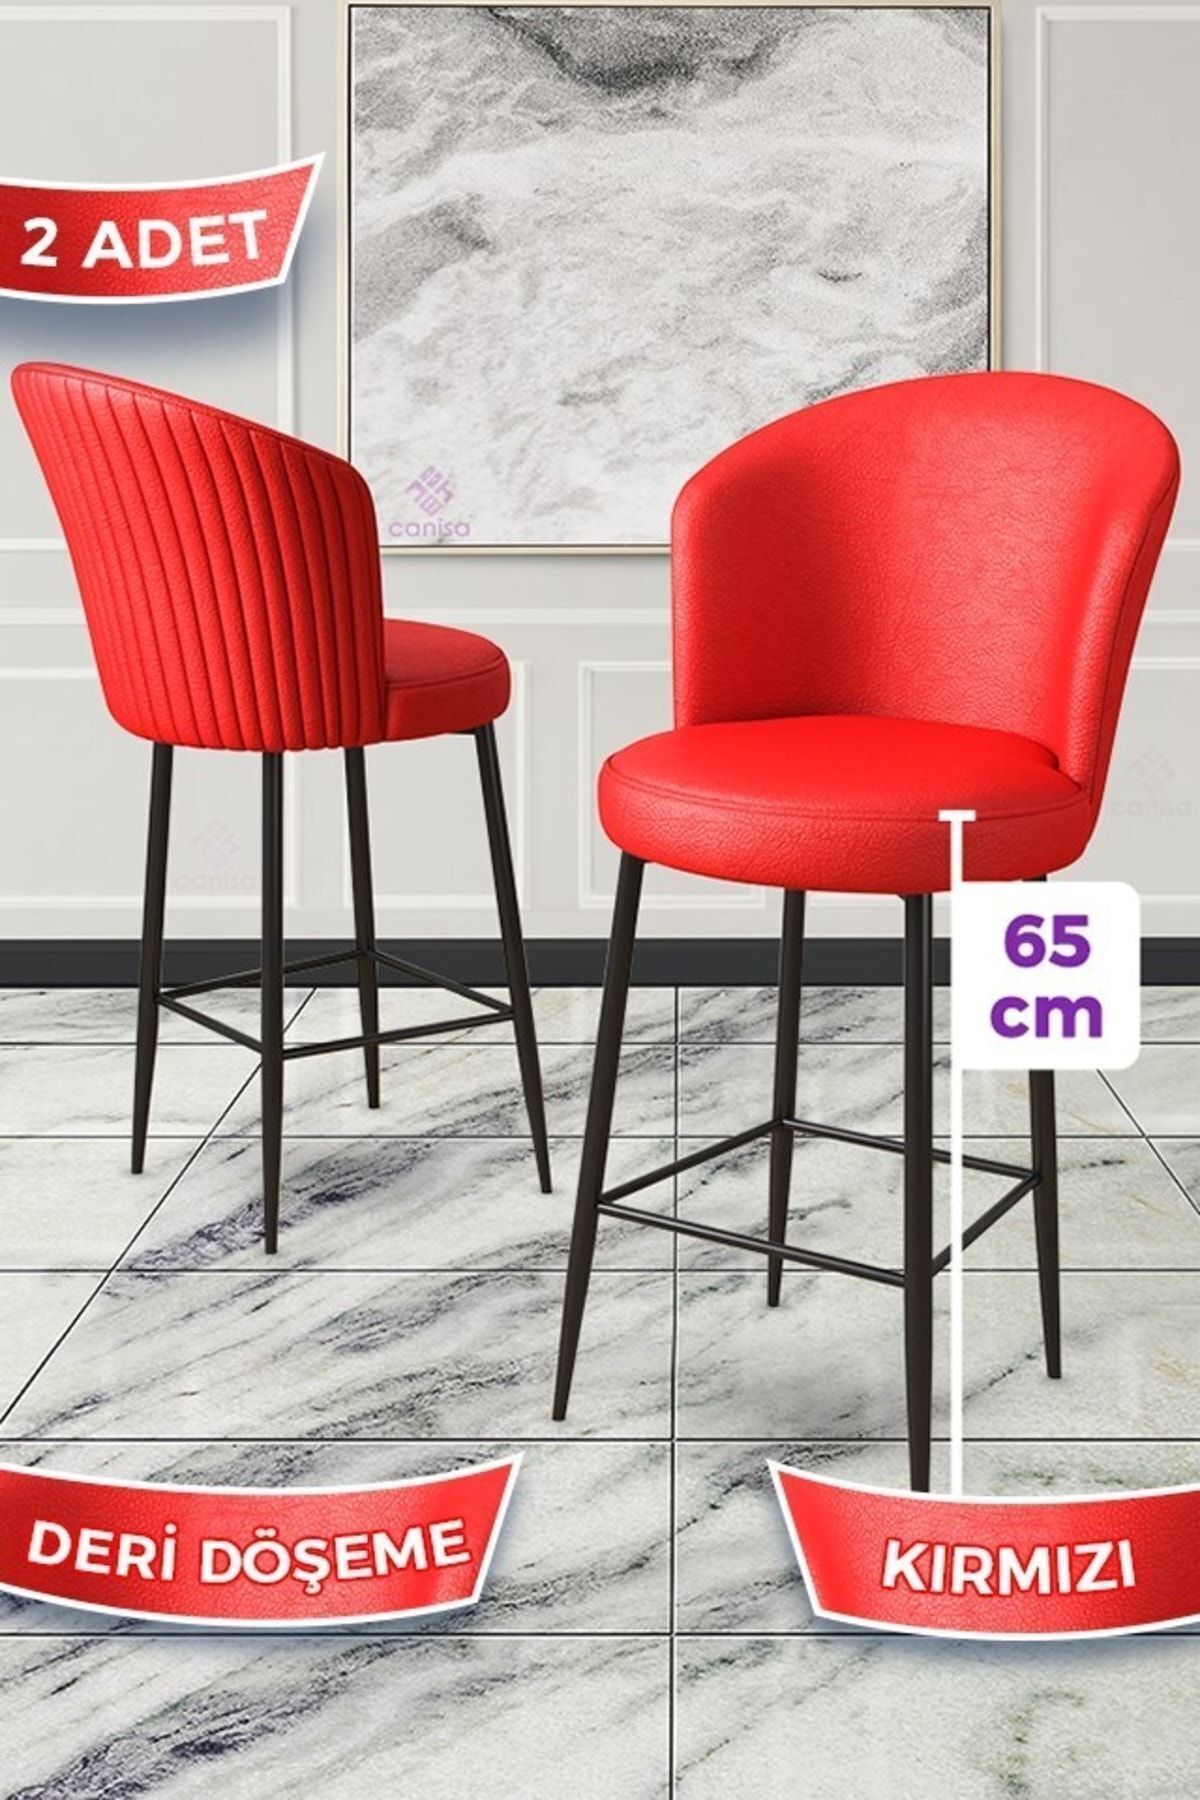 Canisa Rika Serisi 2 Adet Kırmızı 65 Cm Deri Bar Sandalyesi Siyah Metal Ayaklı Ada Mutfak Bar Sandalyesi